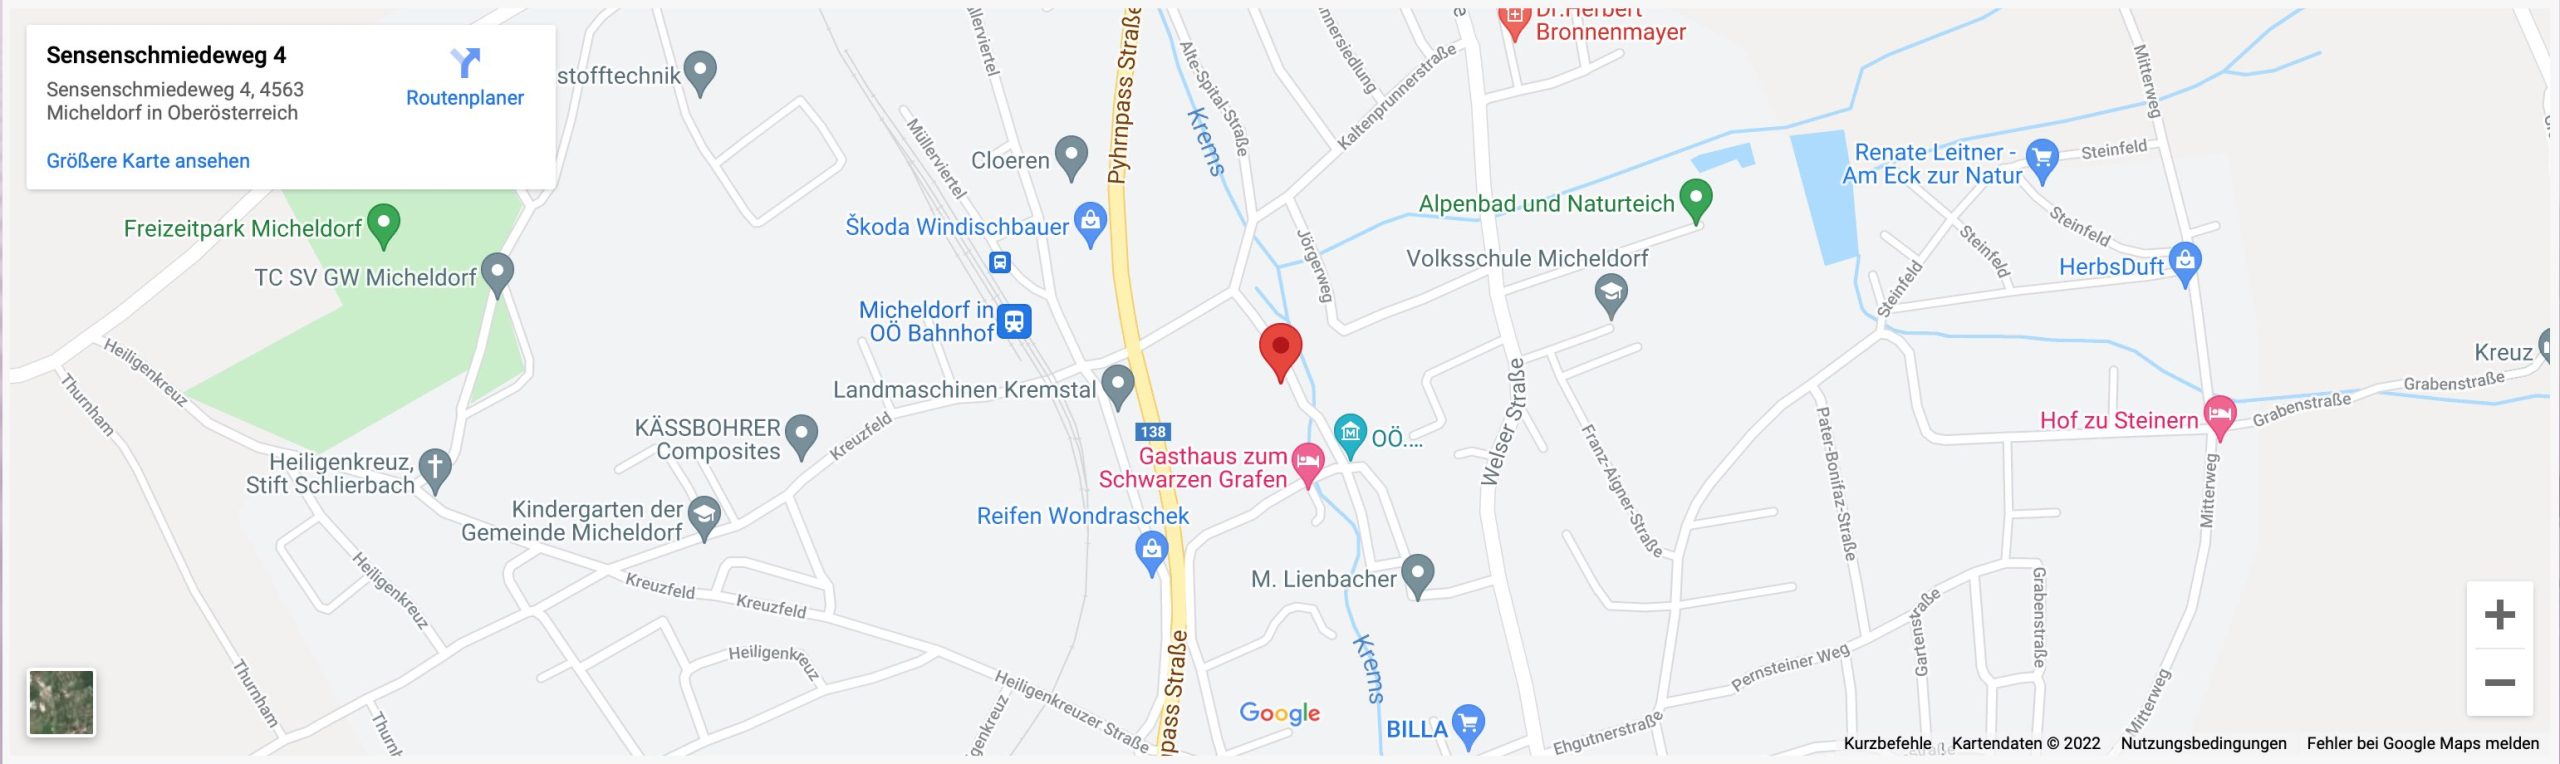 Reinthaler Templ Google Map Vorschau